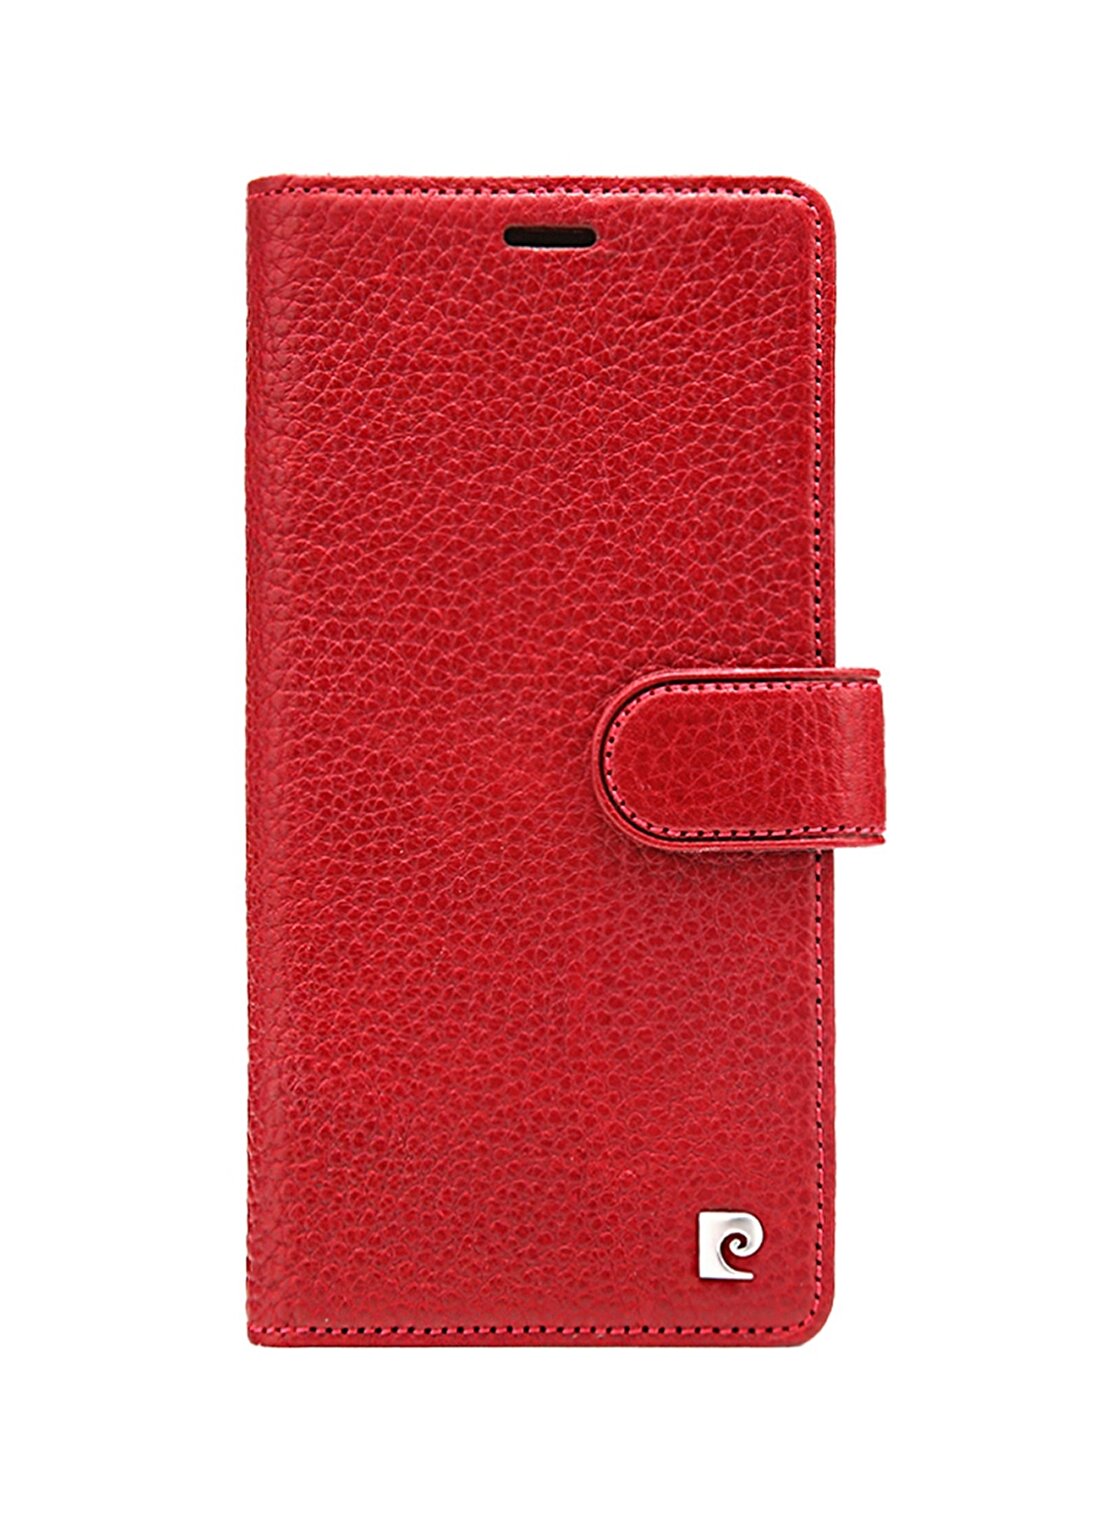 Pierre Cardin PCS-P08 Iphone XS Max (6.5) Bordo Deri Kapaklı Kılıf Telefon Aksesuarı